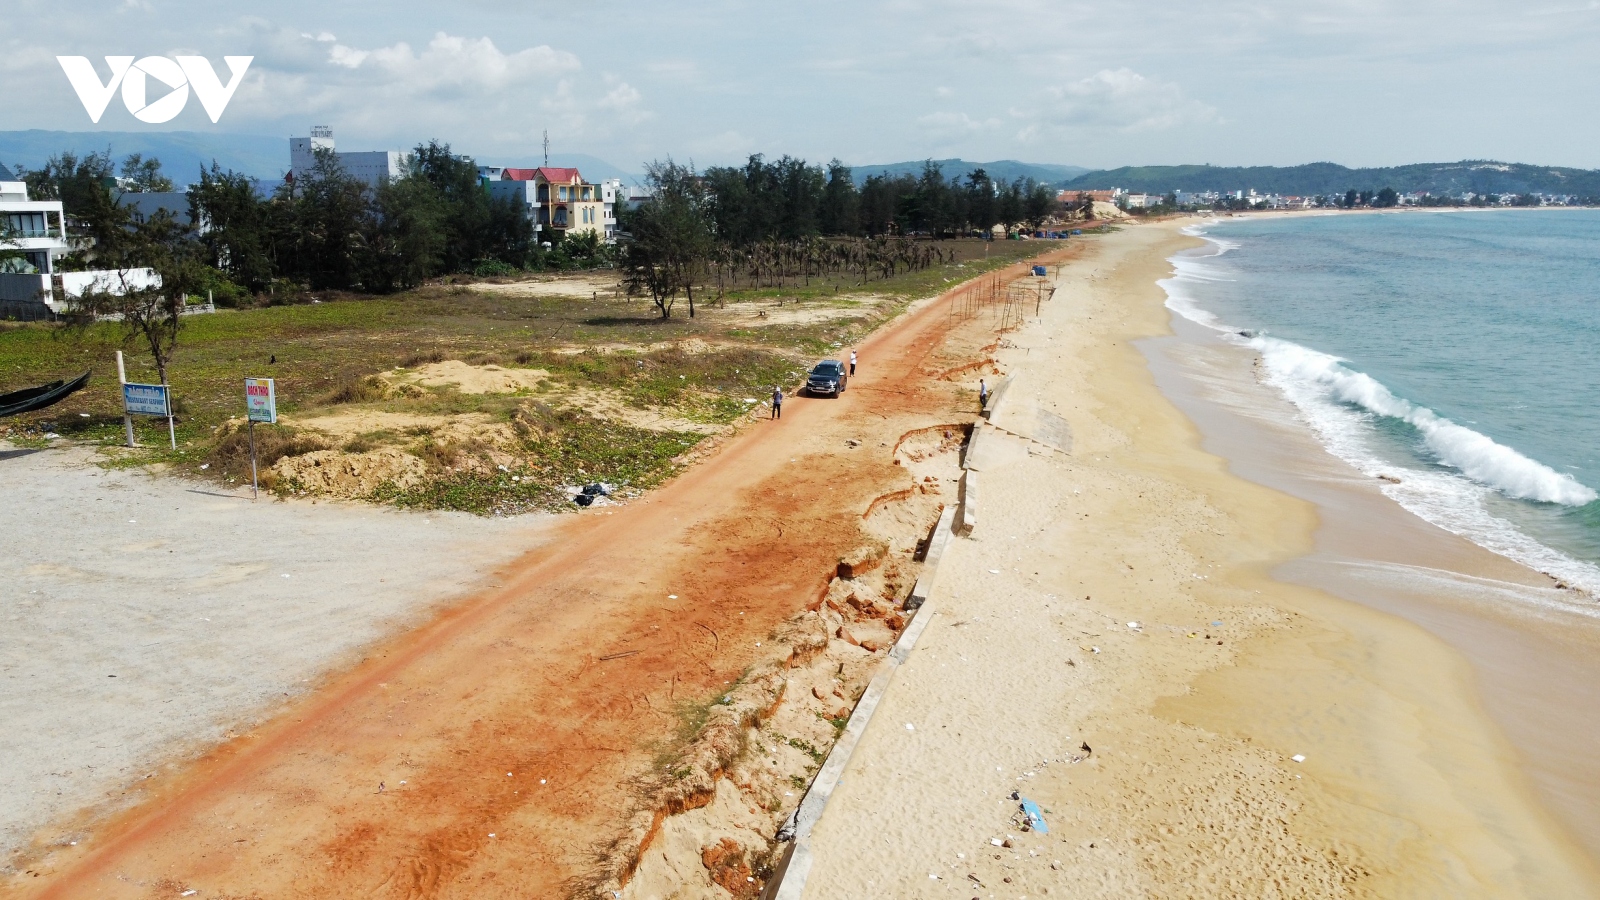 Sóng biển đánh nát kè biển ở Bình Định, người dân lo mất đất